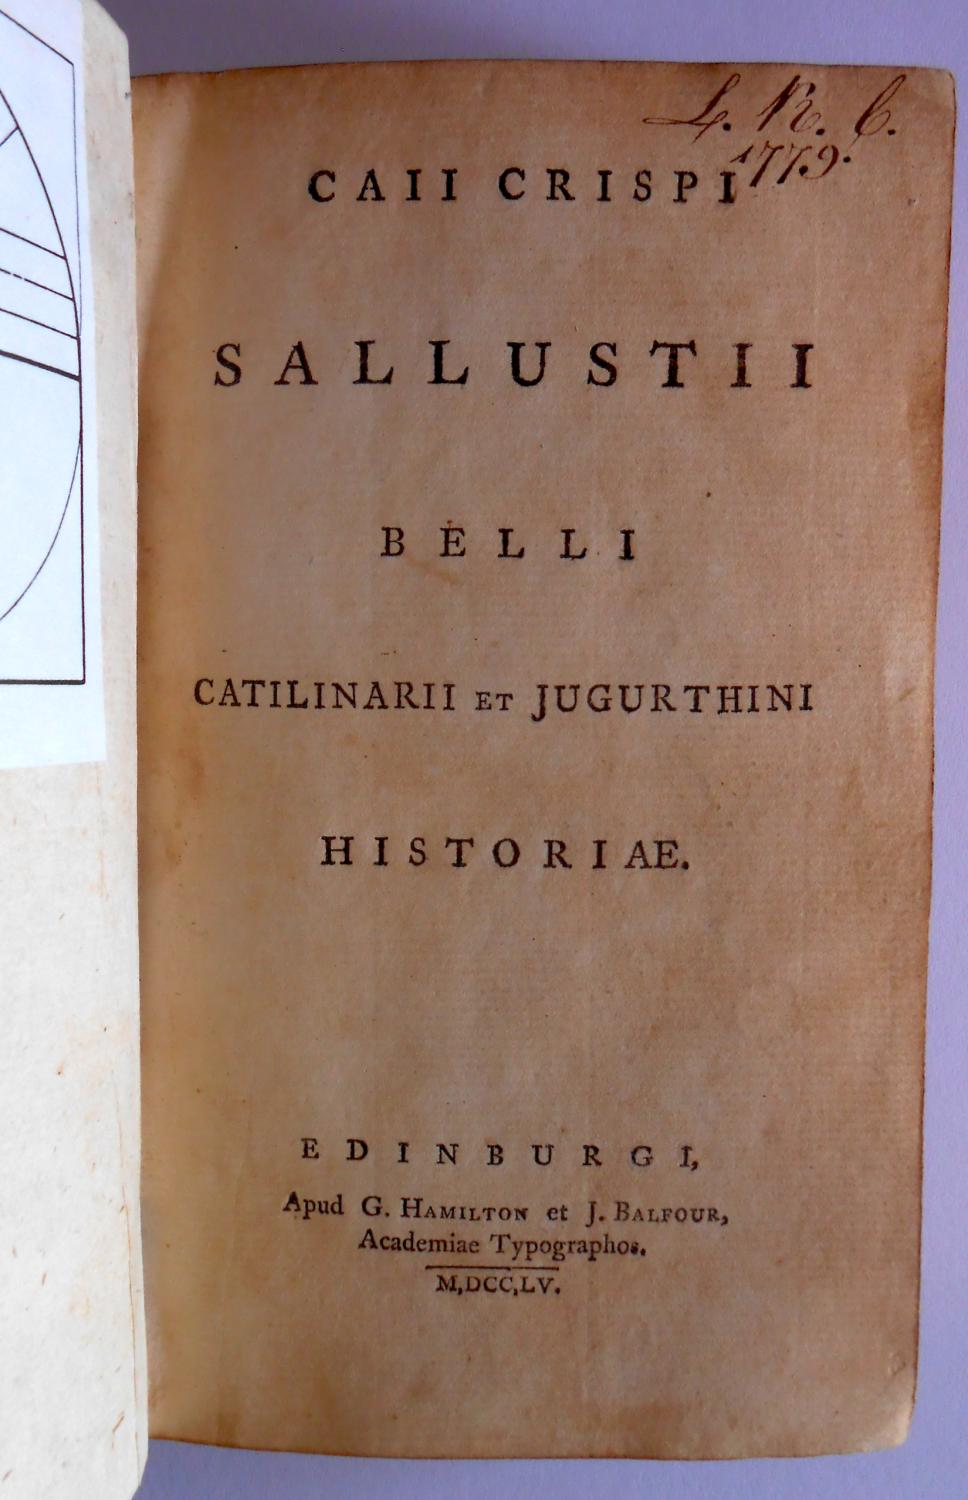 Caii Crispi Sallustii Belli Catilinarii et Jugurthini Historiae. - Sallust (Gaius Sallustius Crispus)